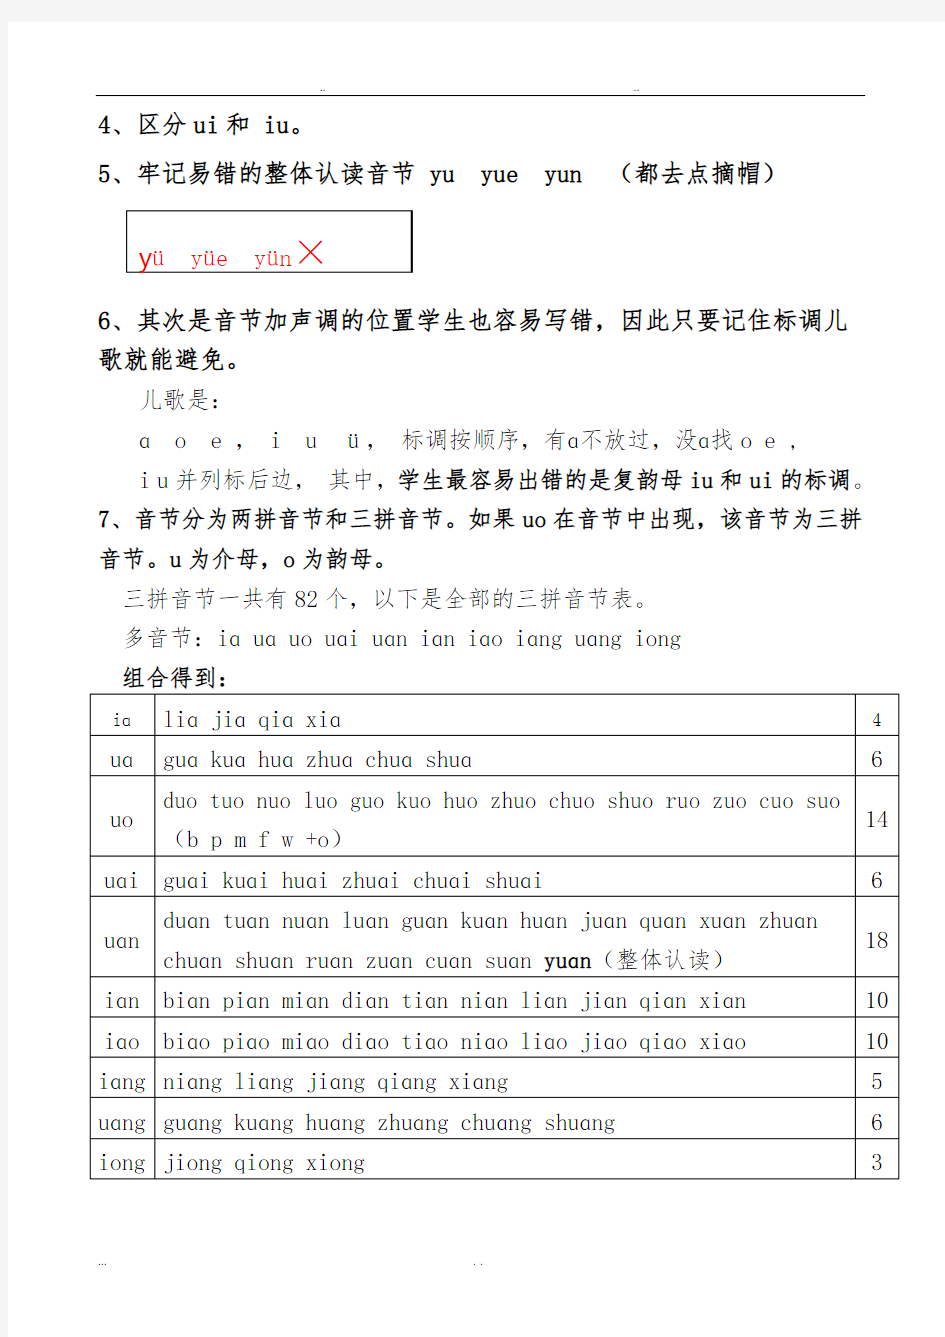 汉语拼音重点难点与考点的梳理